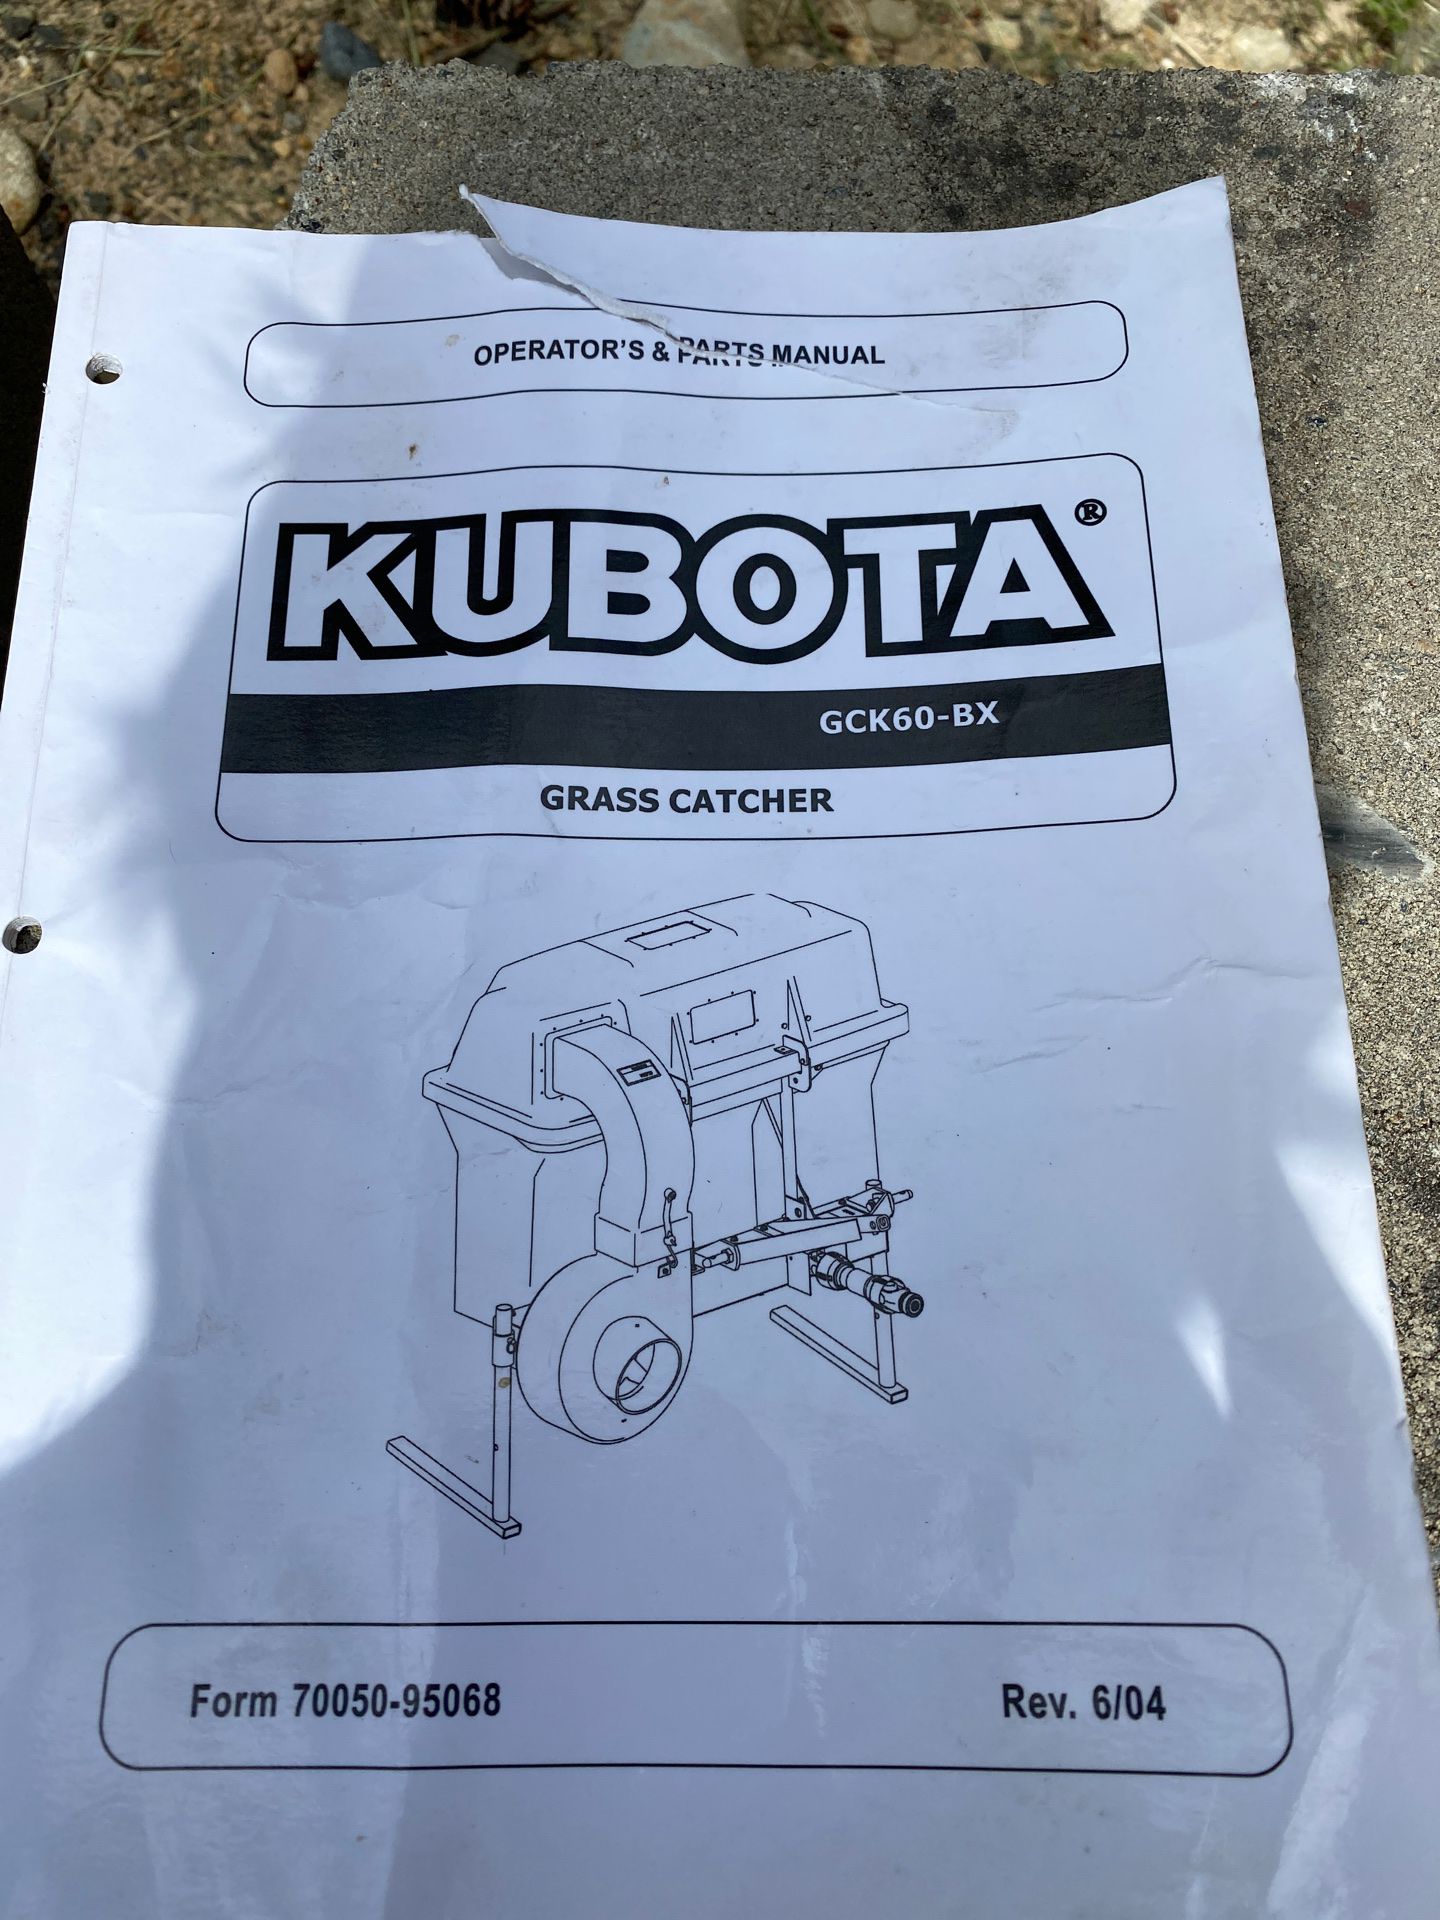 Kubota GCK60-BX grass catcher